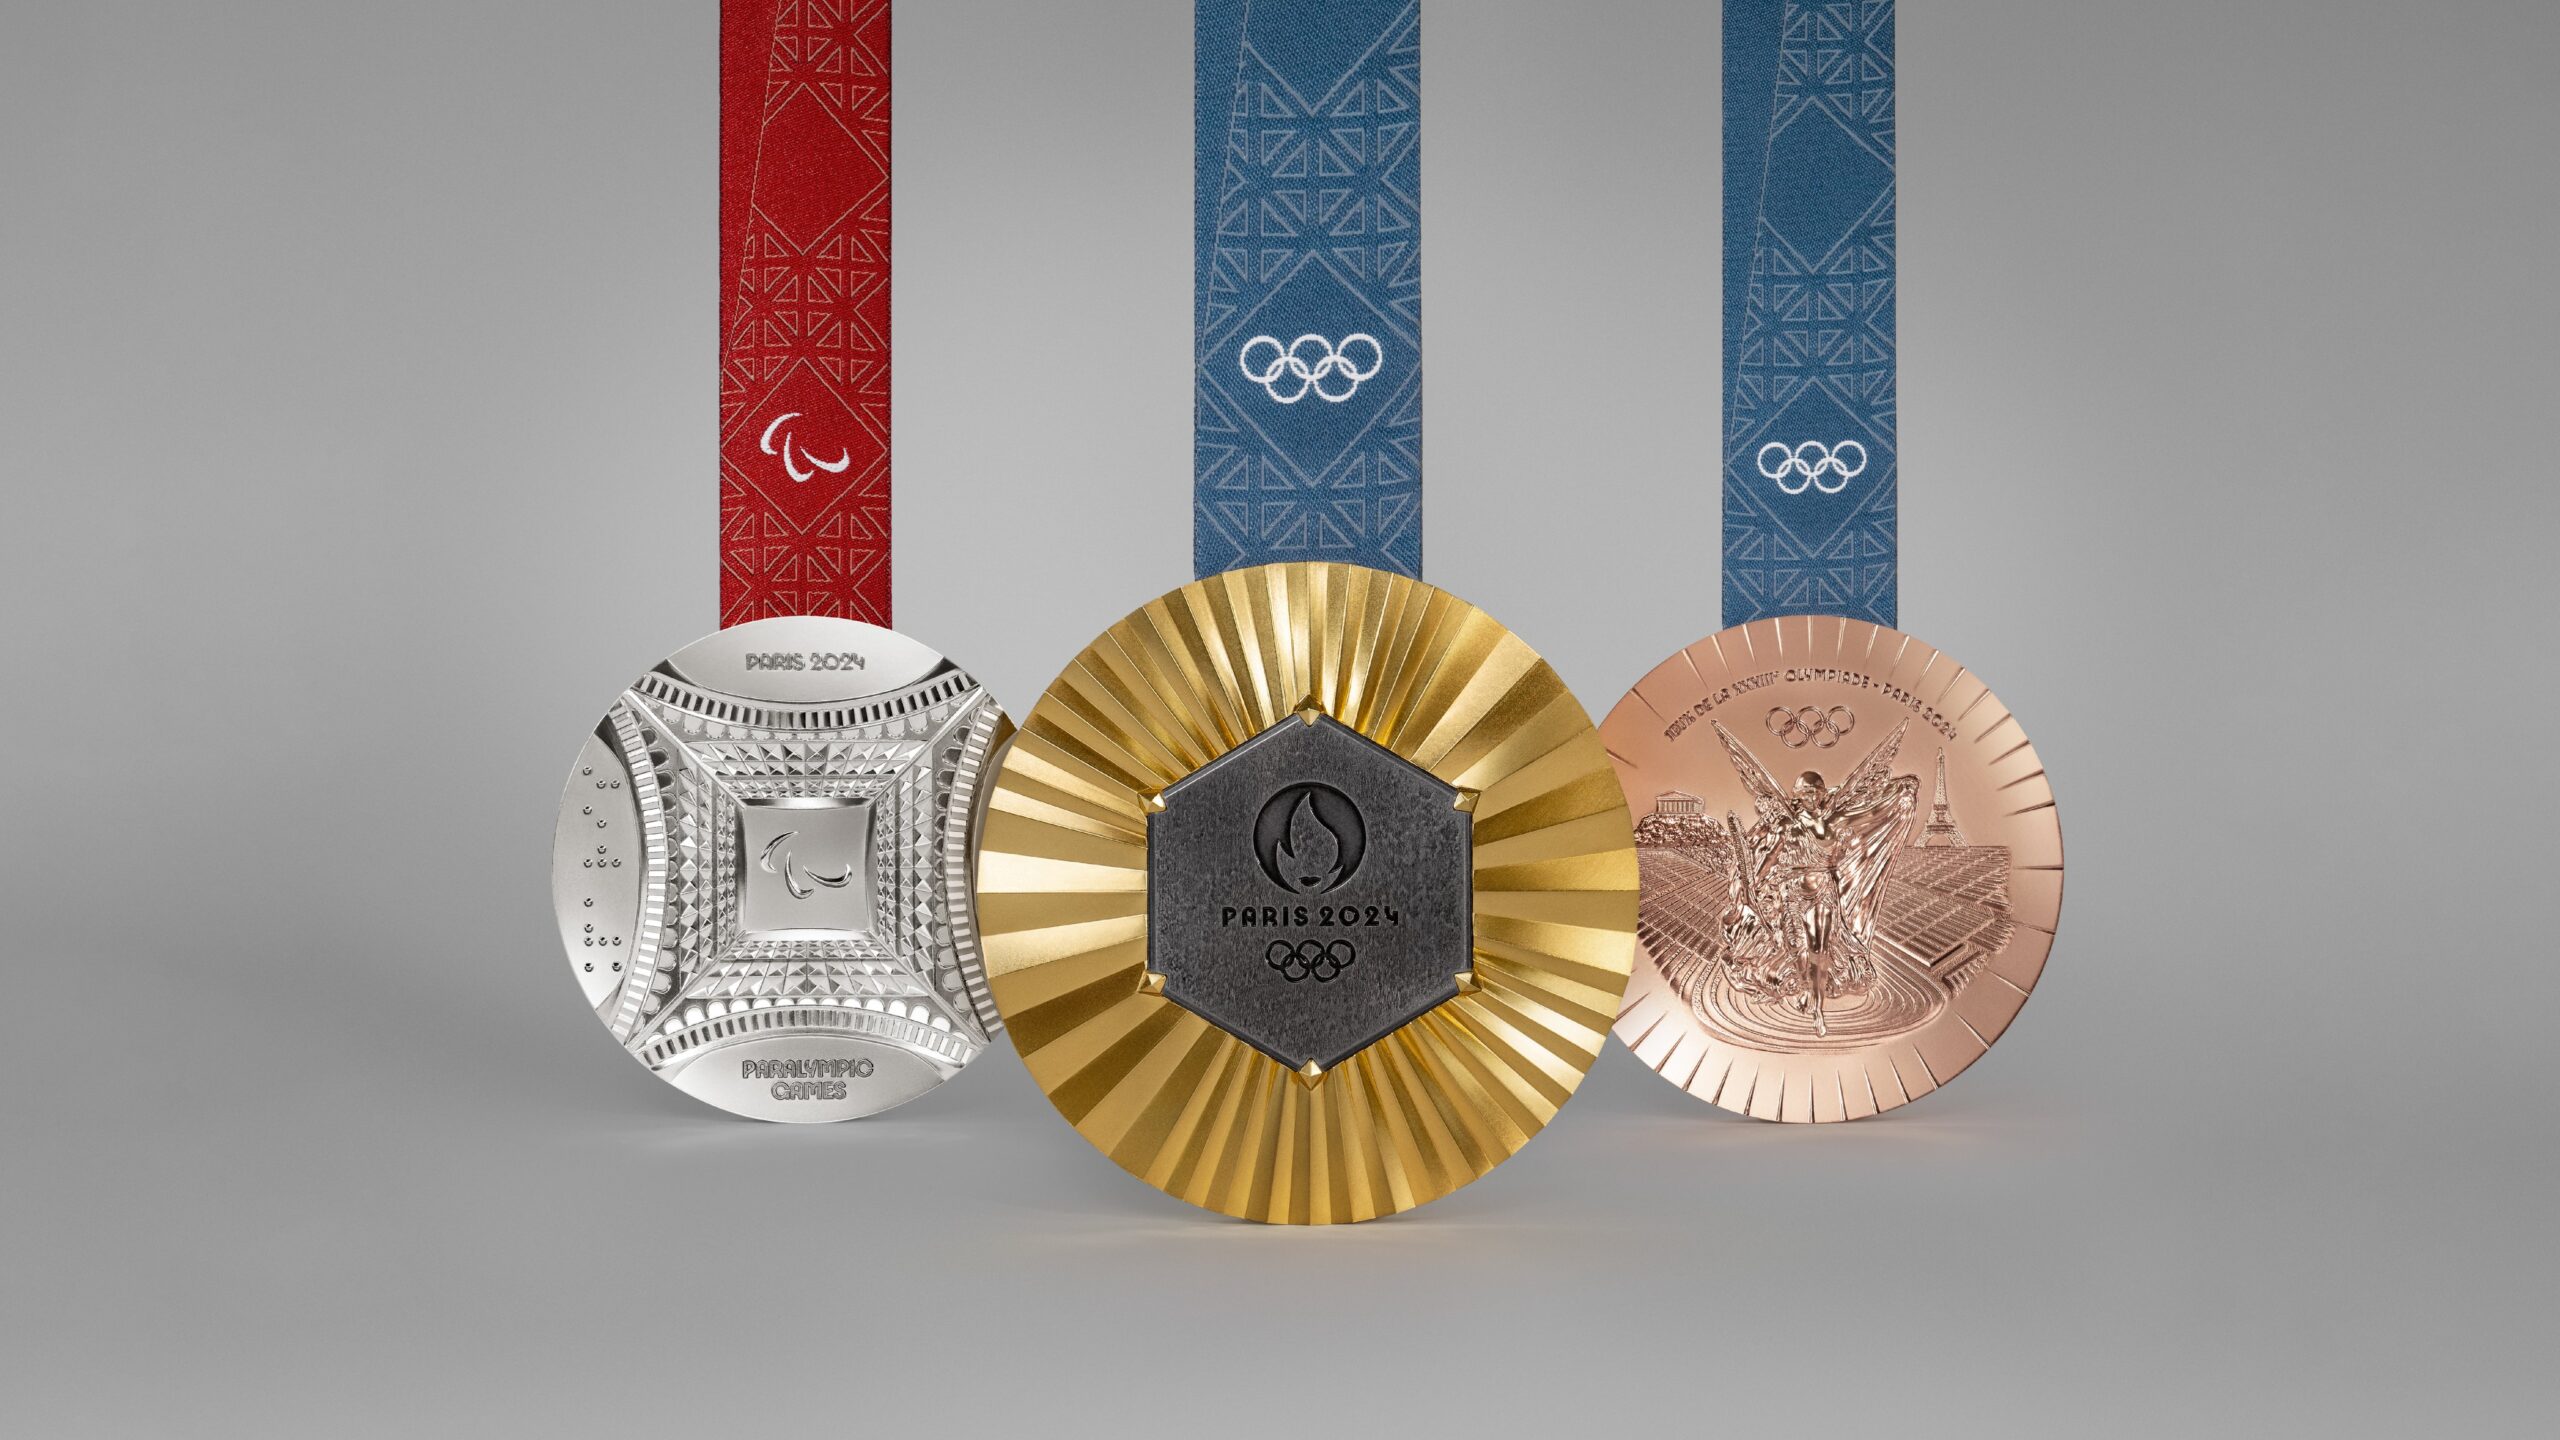 Medalla de oro Premio medalla olímpica, copa de oro., medalla